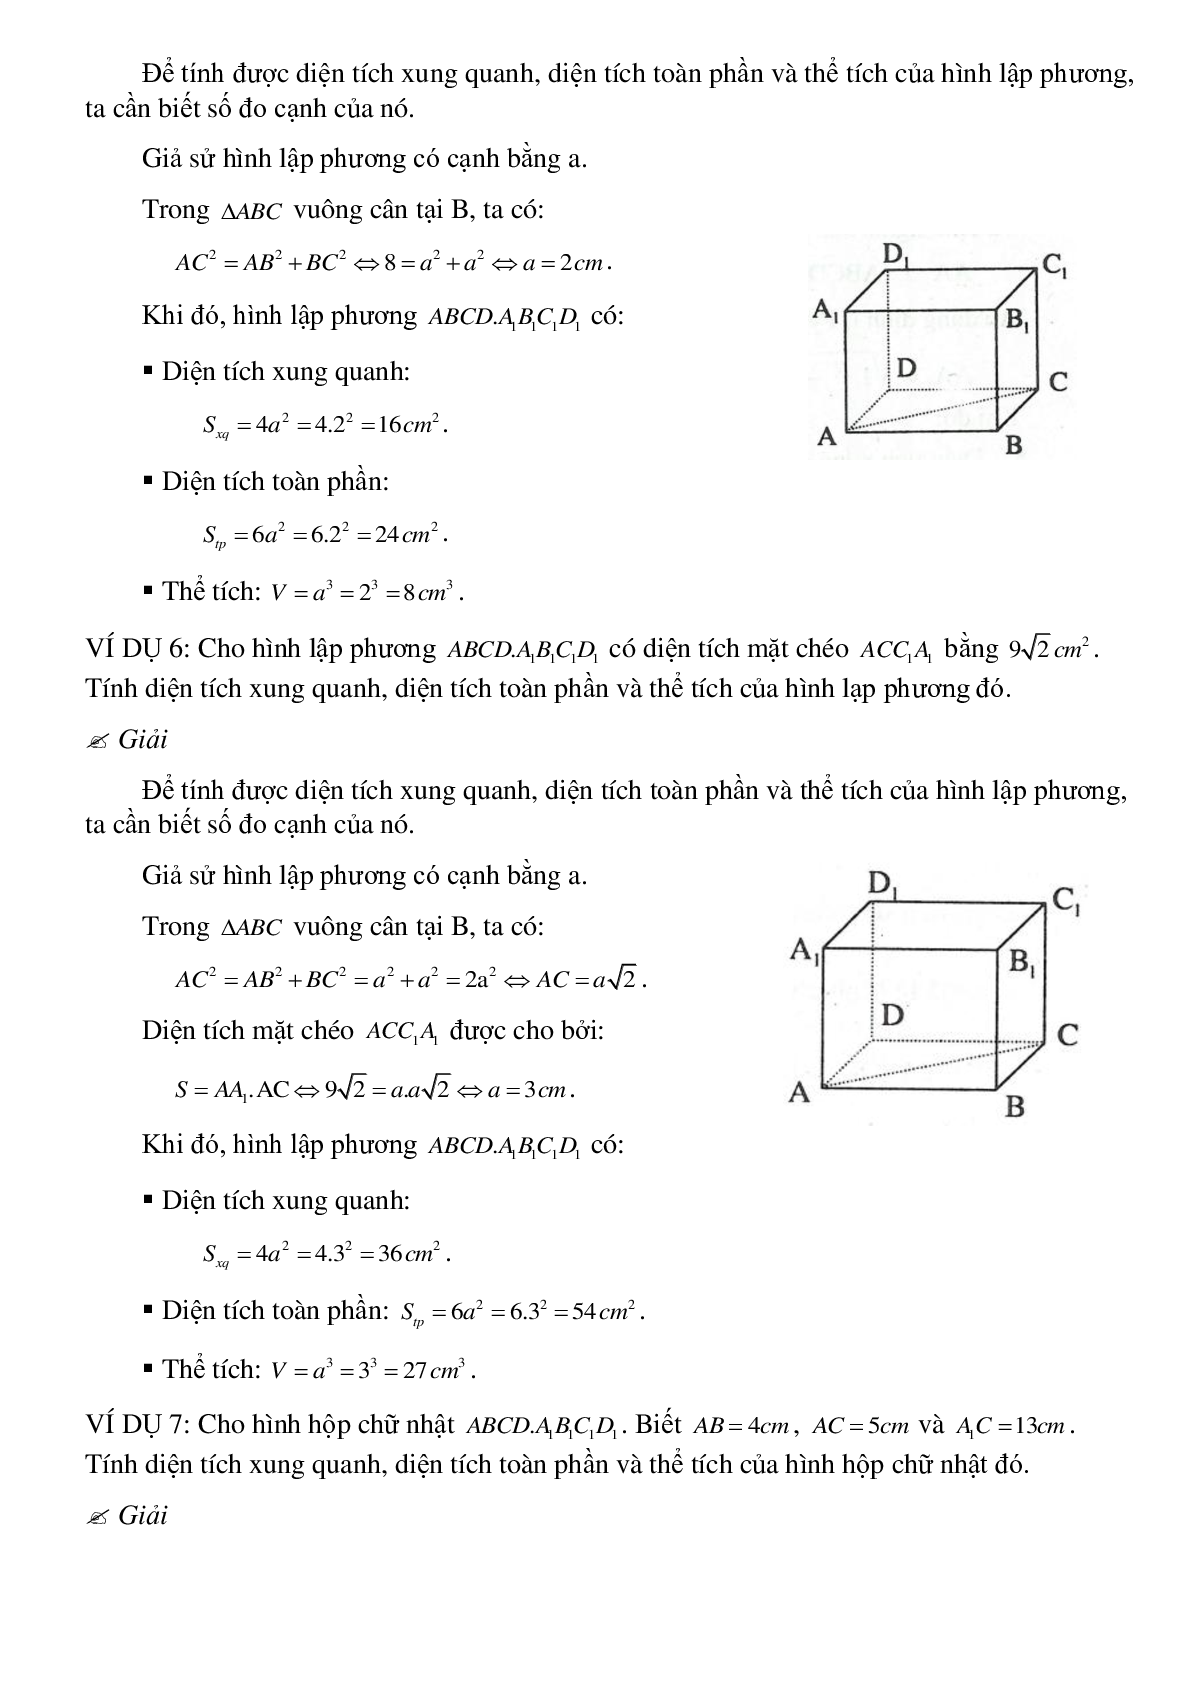 Tổng hợp các dạng toán thường gặp về Thể tích của hình hộp chữ nhật có lời giải (trang 9)